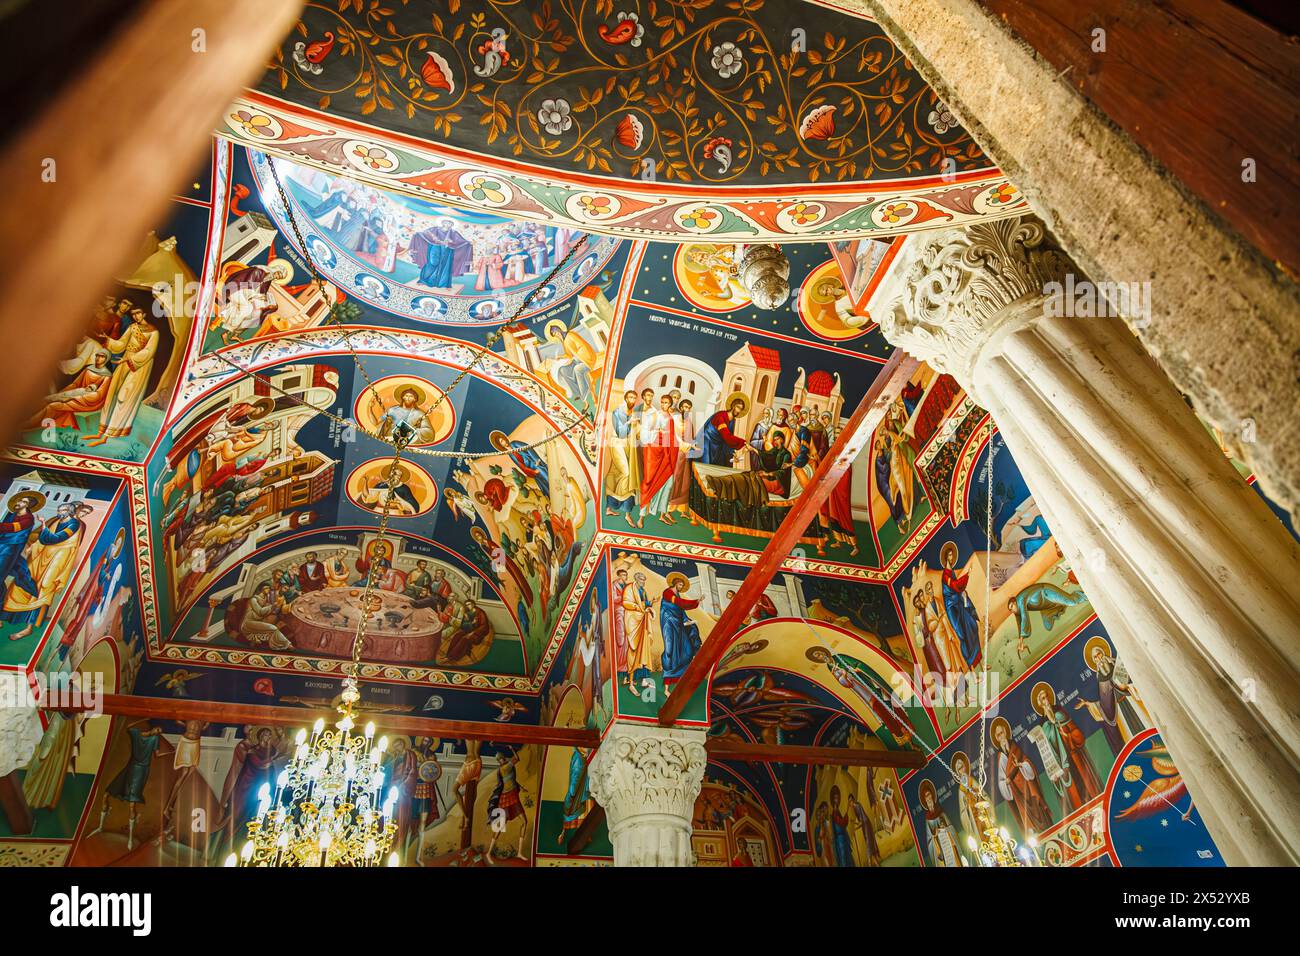 Peintures murales colorées et coupole dans l'église New selon George à Lipscani, Bucarest, capitale de la Roumanie, Europe centrale Banque D'Images